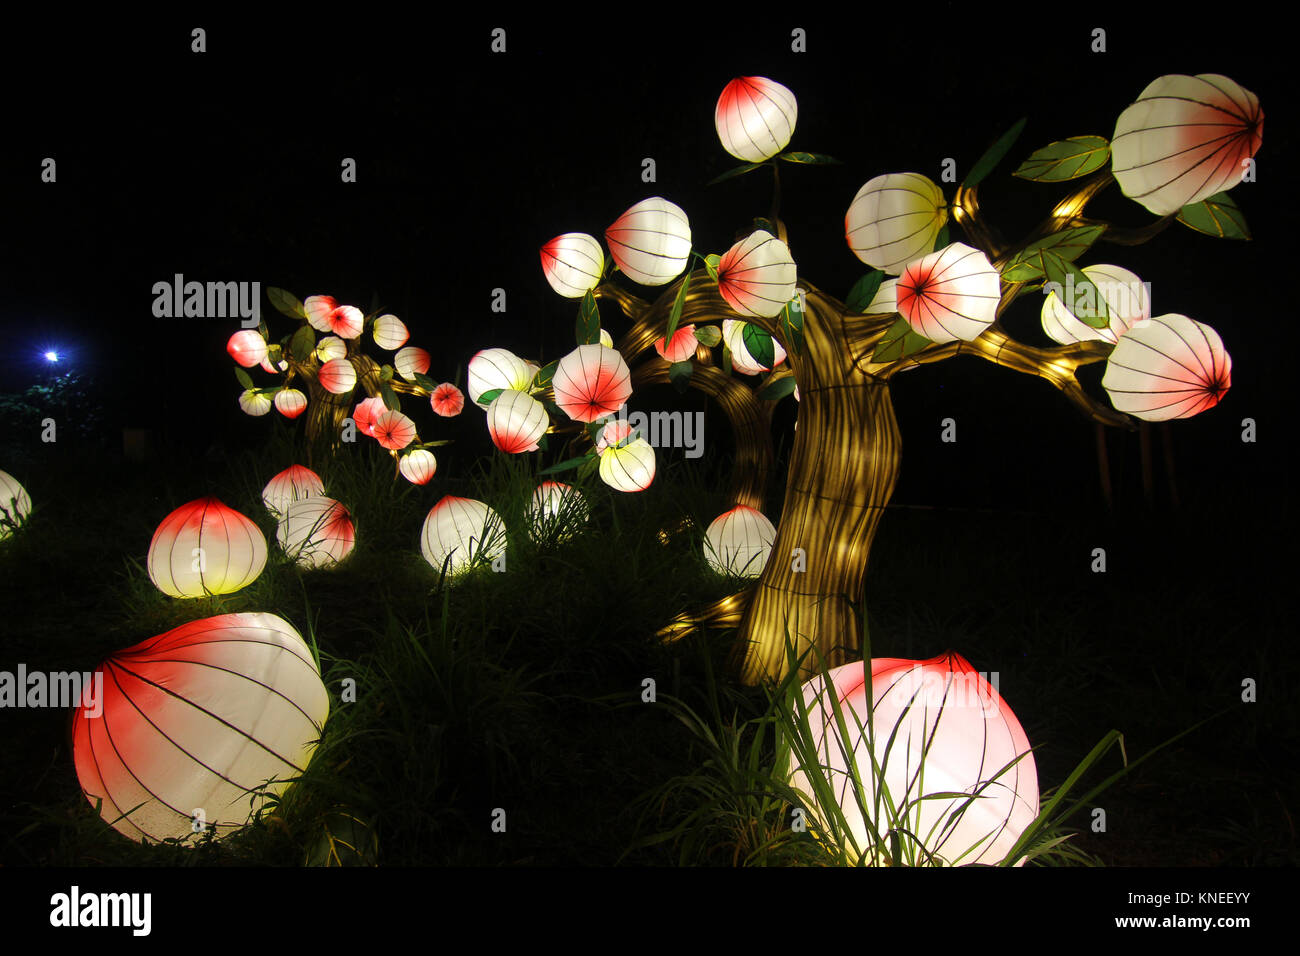 Basso angolo di vista illuminata lanterne cinesi appeso a un albero Foto Stock